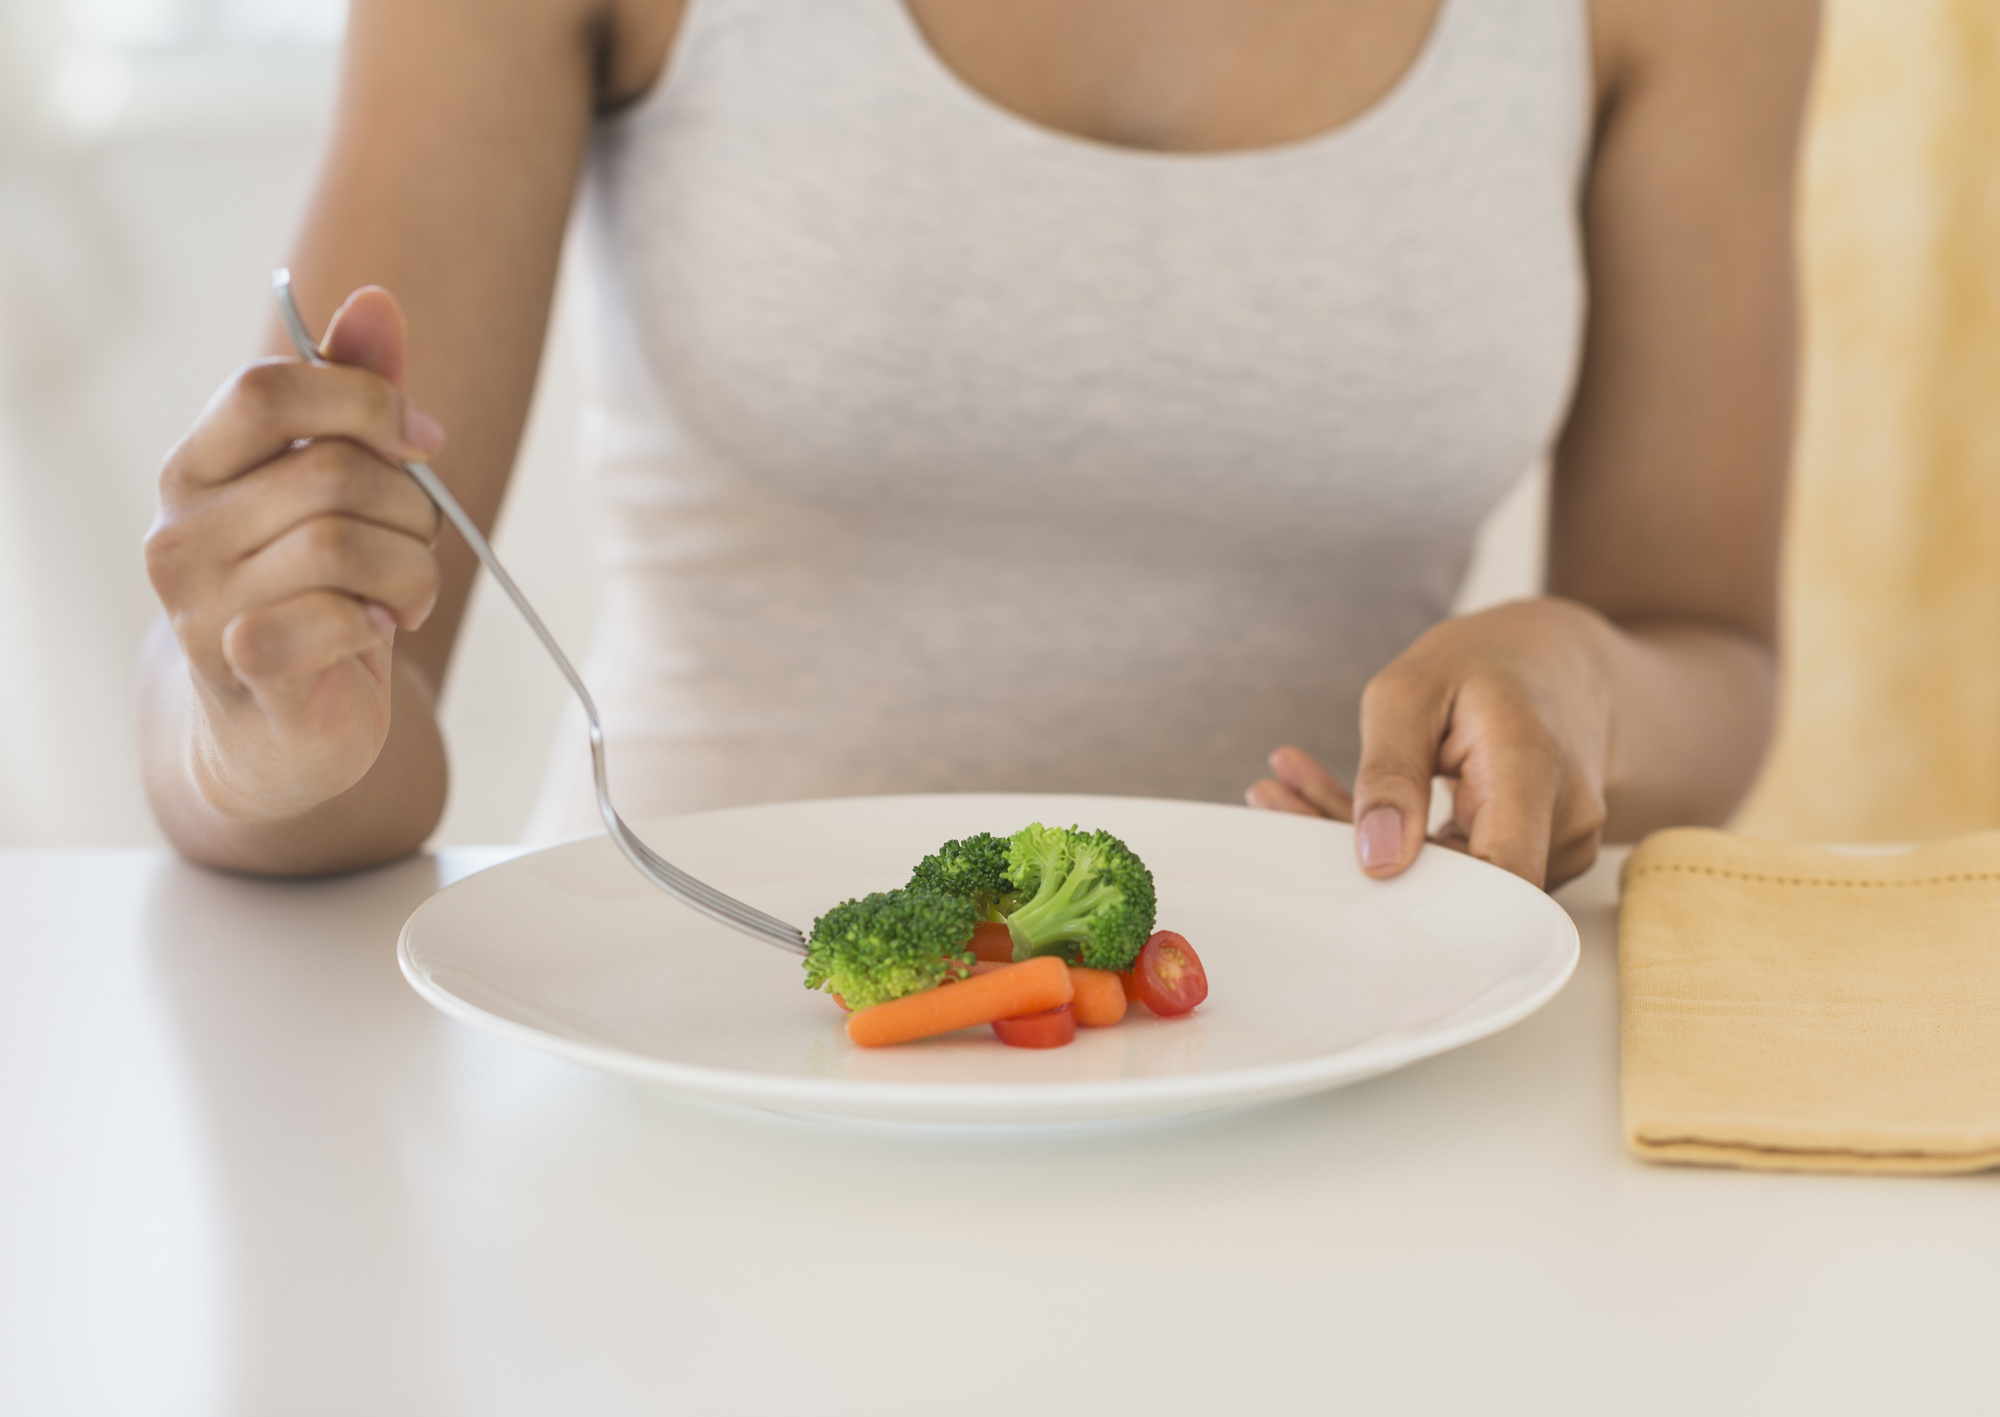 Как похудеть без диет в домашних условиях: рецепты быстрого похудения без строгих диет